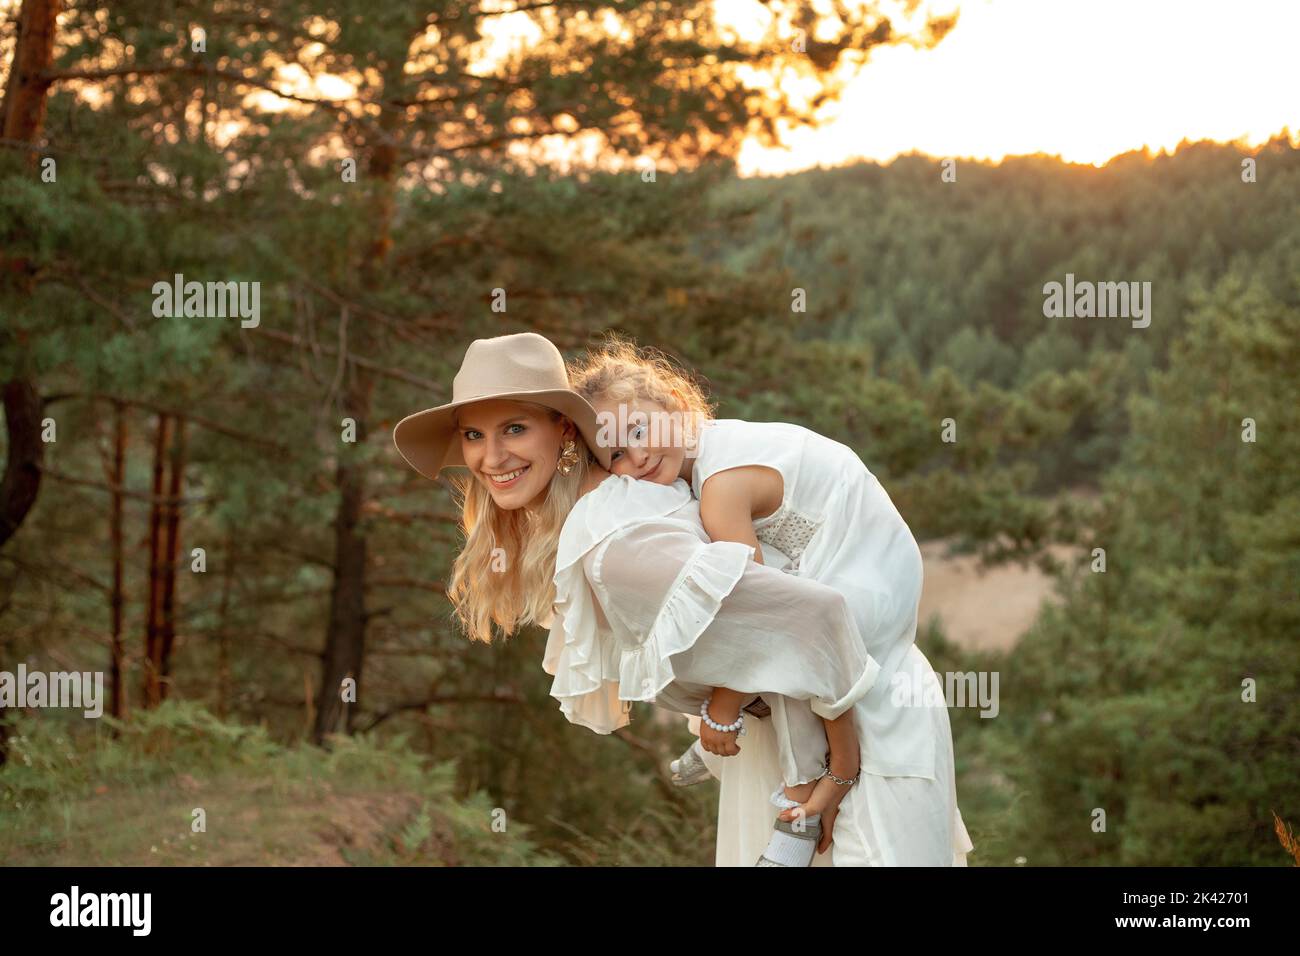 Entzückende, fröhliche, lachende Frau, Mutter im Hut, die ein müdes kleines Mädchen auf dem Rücken trägt, Tochter auf der Wiese im Wald Stockfoto